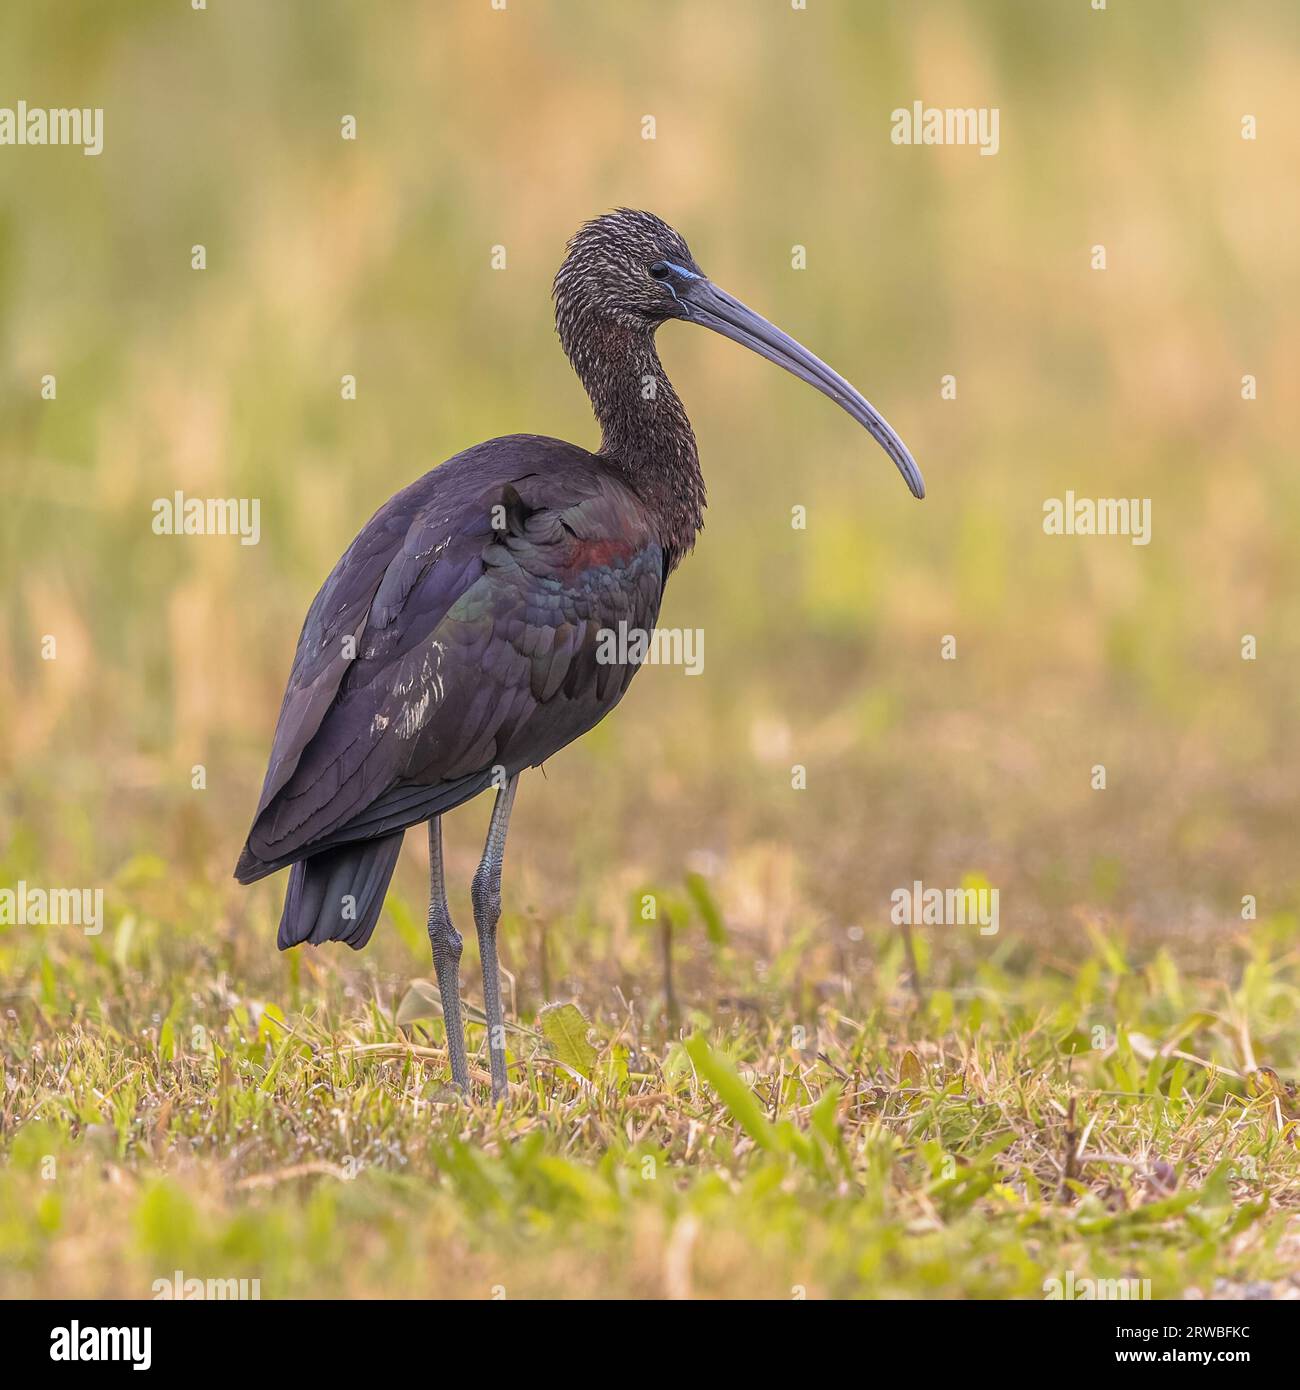 Glossy ibis (Plegadis falcinellus) foraging in grass in Ebro delta nature reserve, Catalonia, Spain. Stock Photo